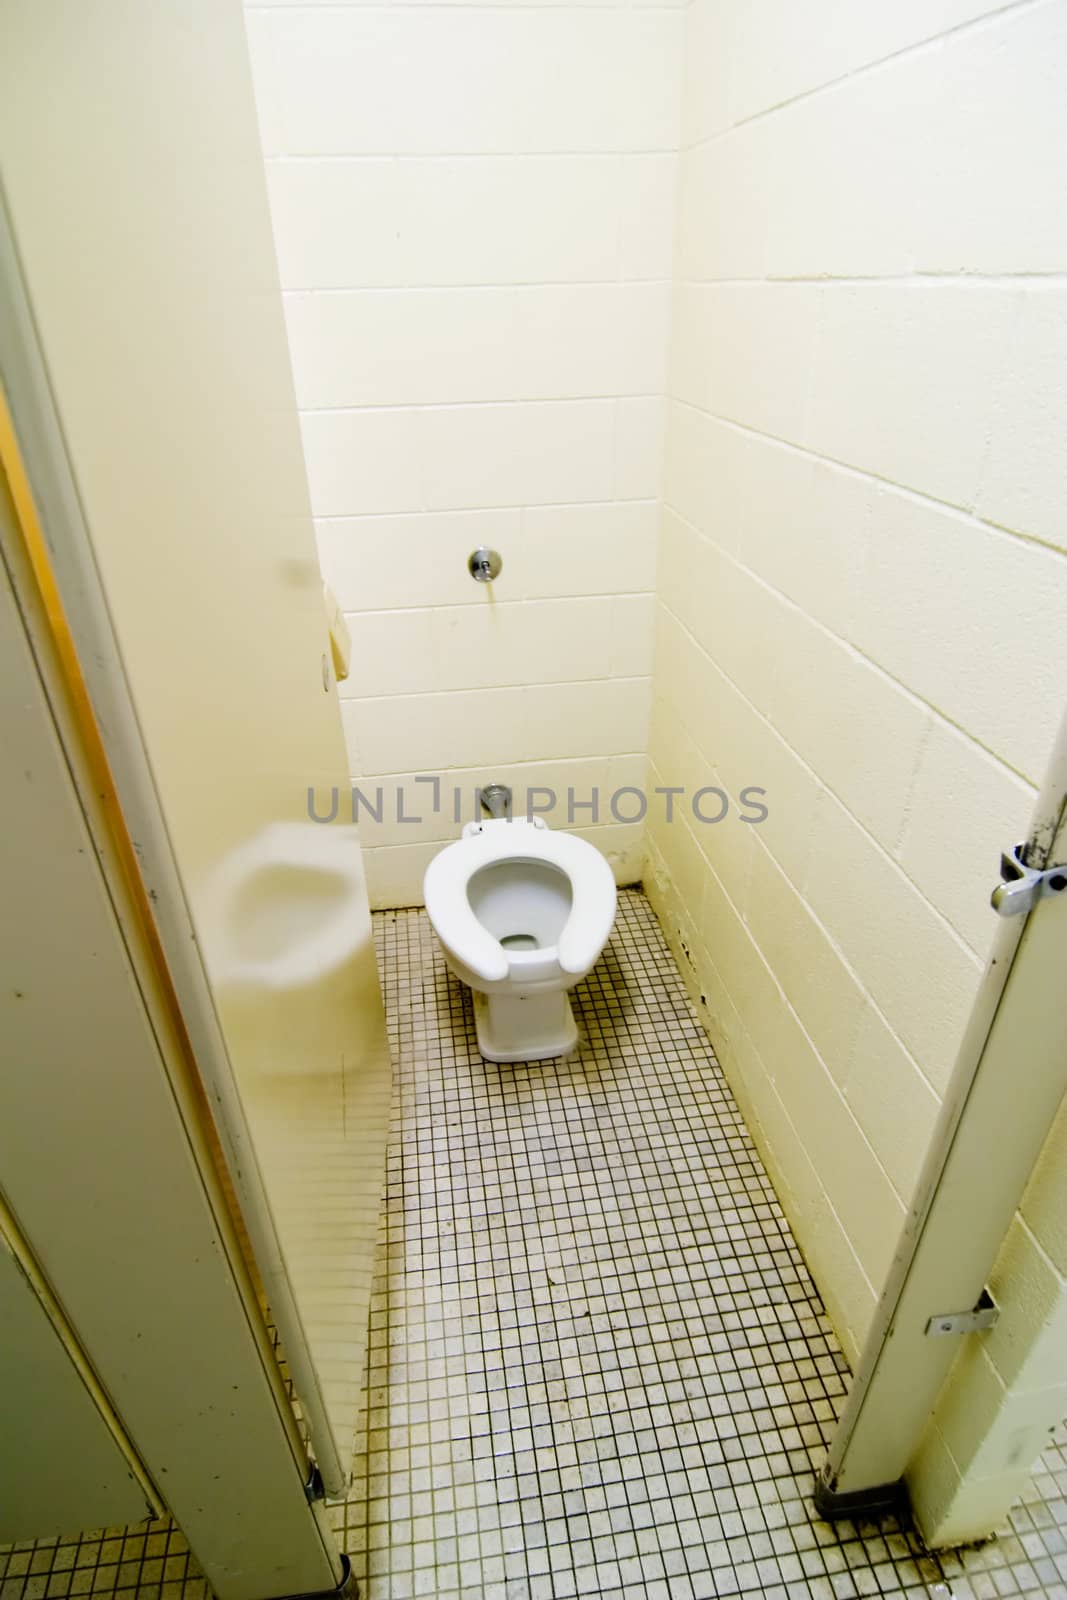 Toilet in a public washroom.